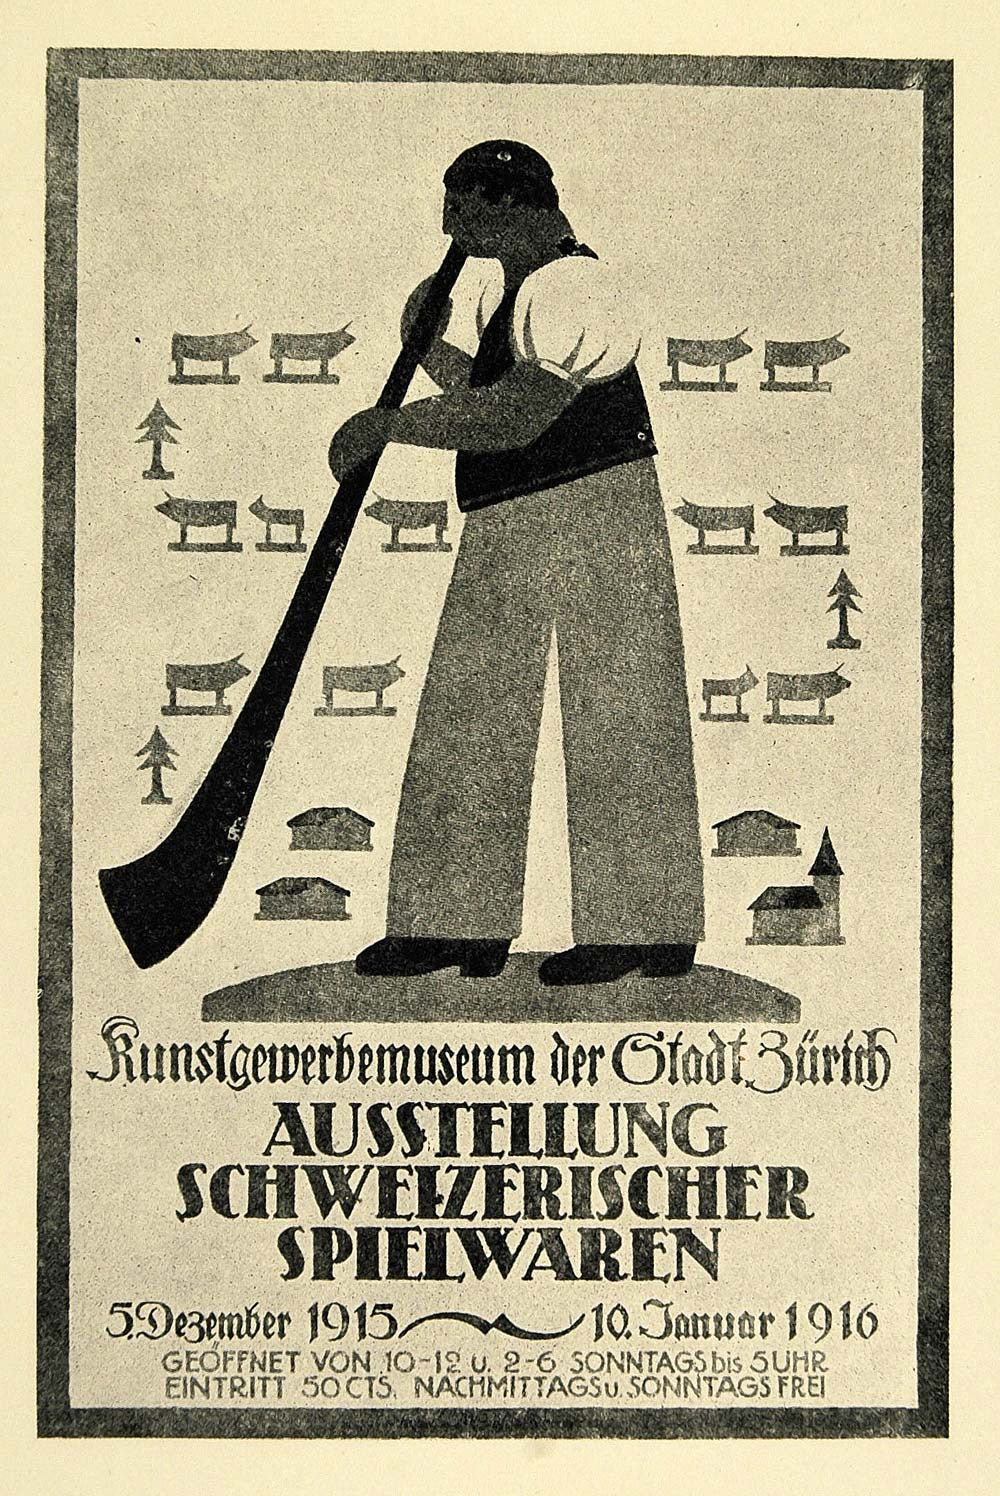 1924 Print Wilhelm Kienzle Poster Art Swiss Alphorn Kunstgewerbemuseum Zurich